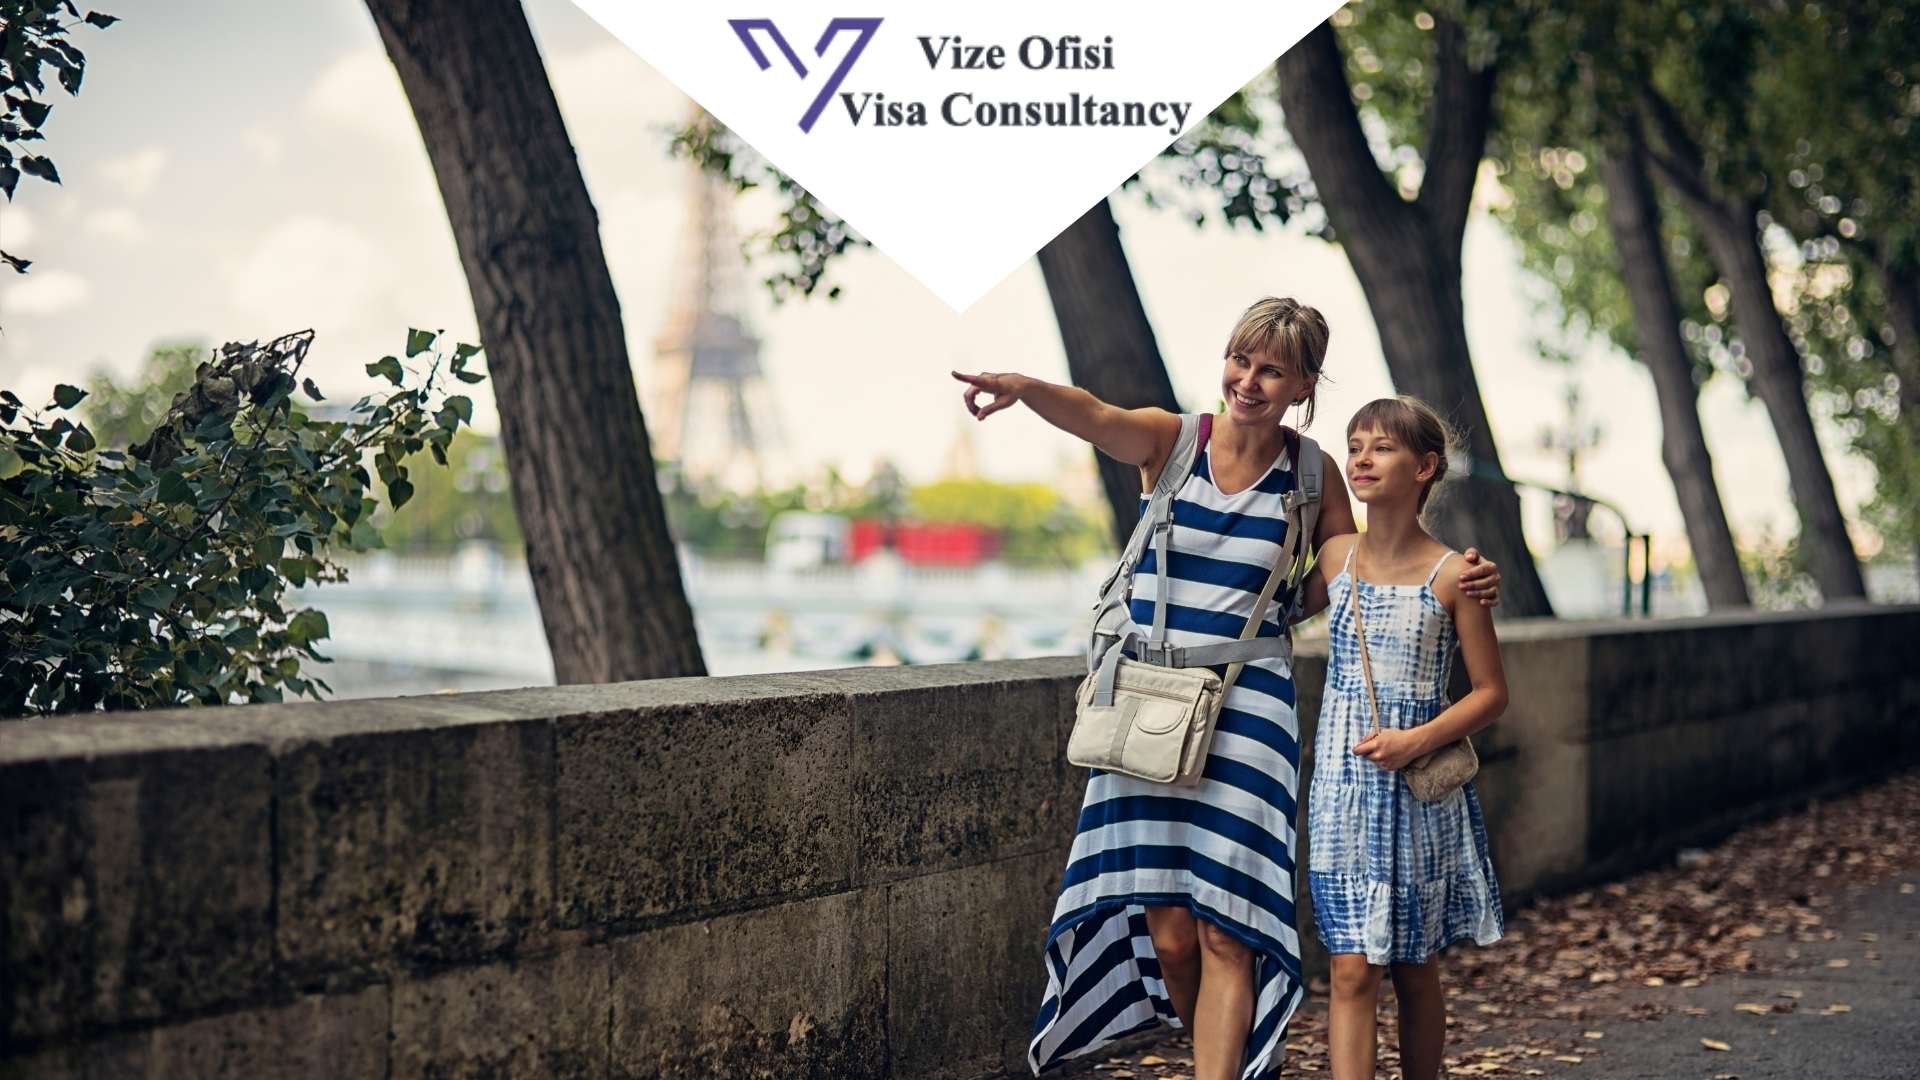 Fransa Aile ve Arkadaş Ziyareti Vize İşlemleri